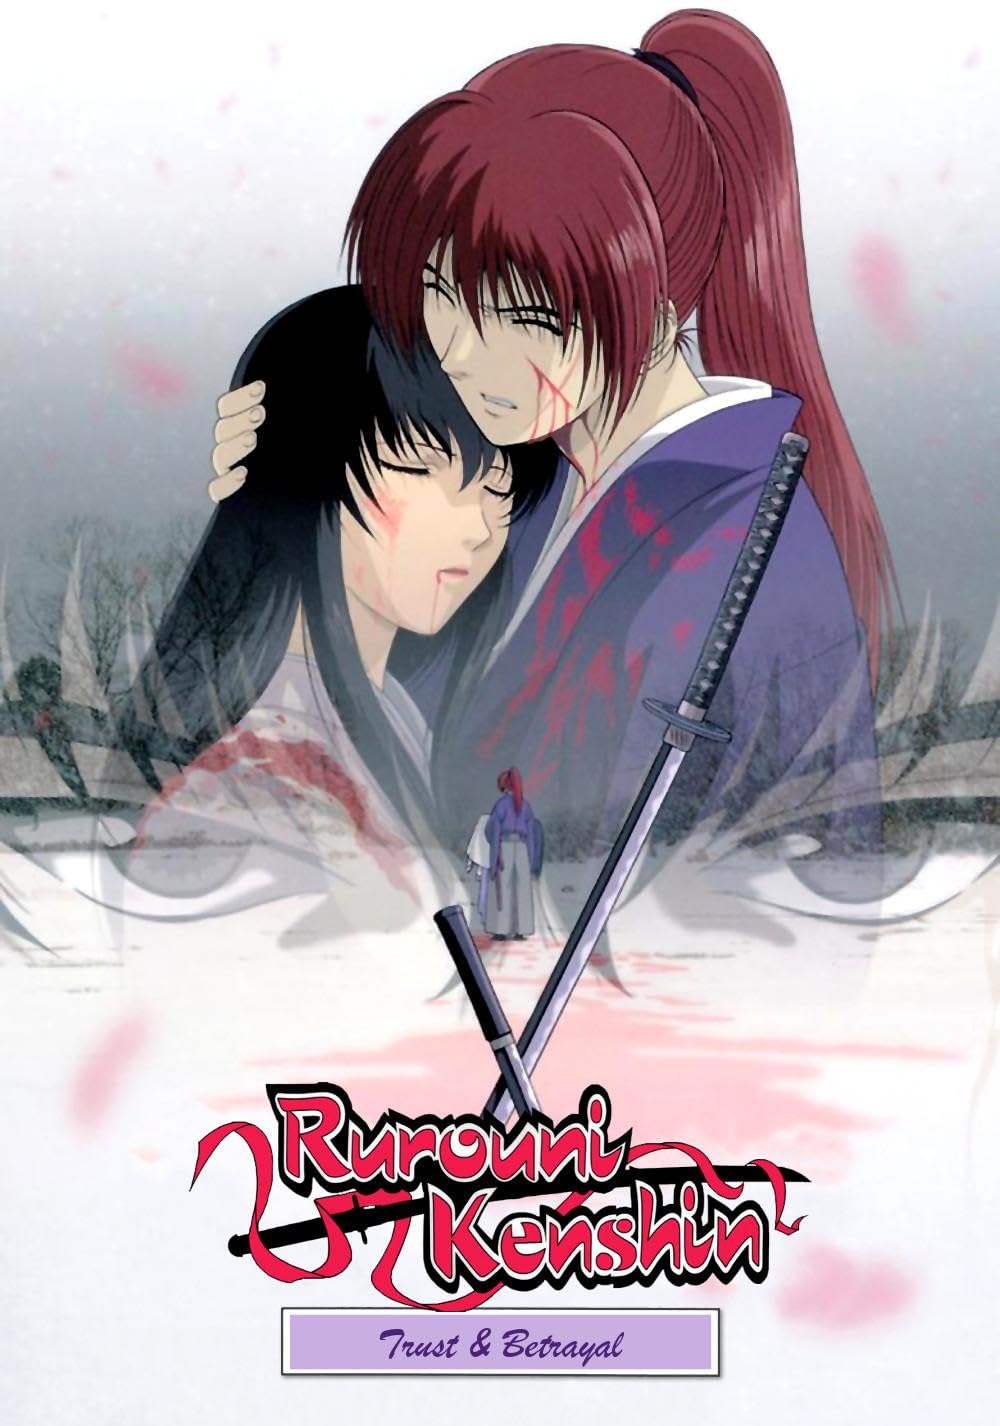 Rurouni Kenshin (Samurai X): Trust and Betrayal